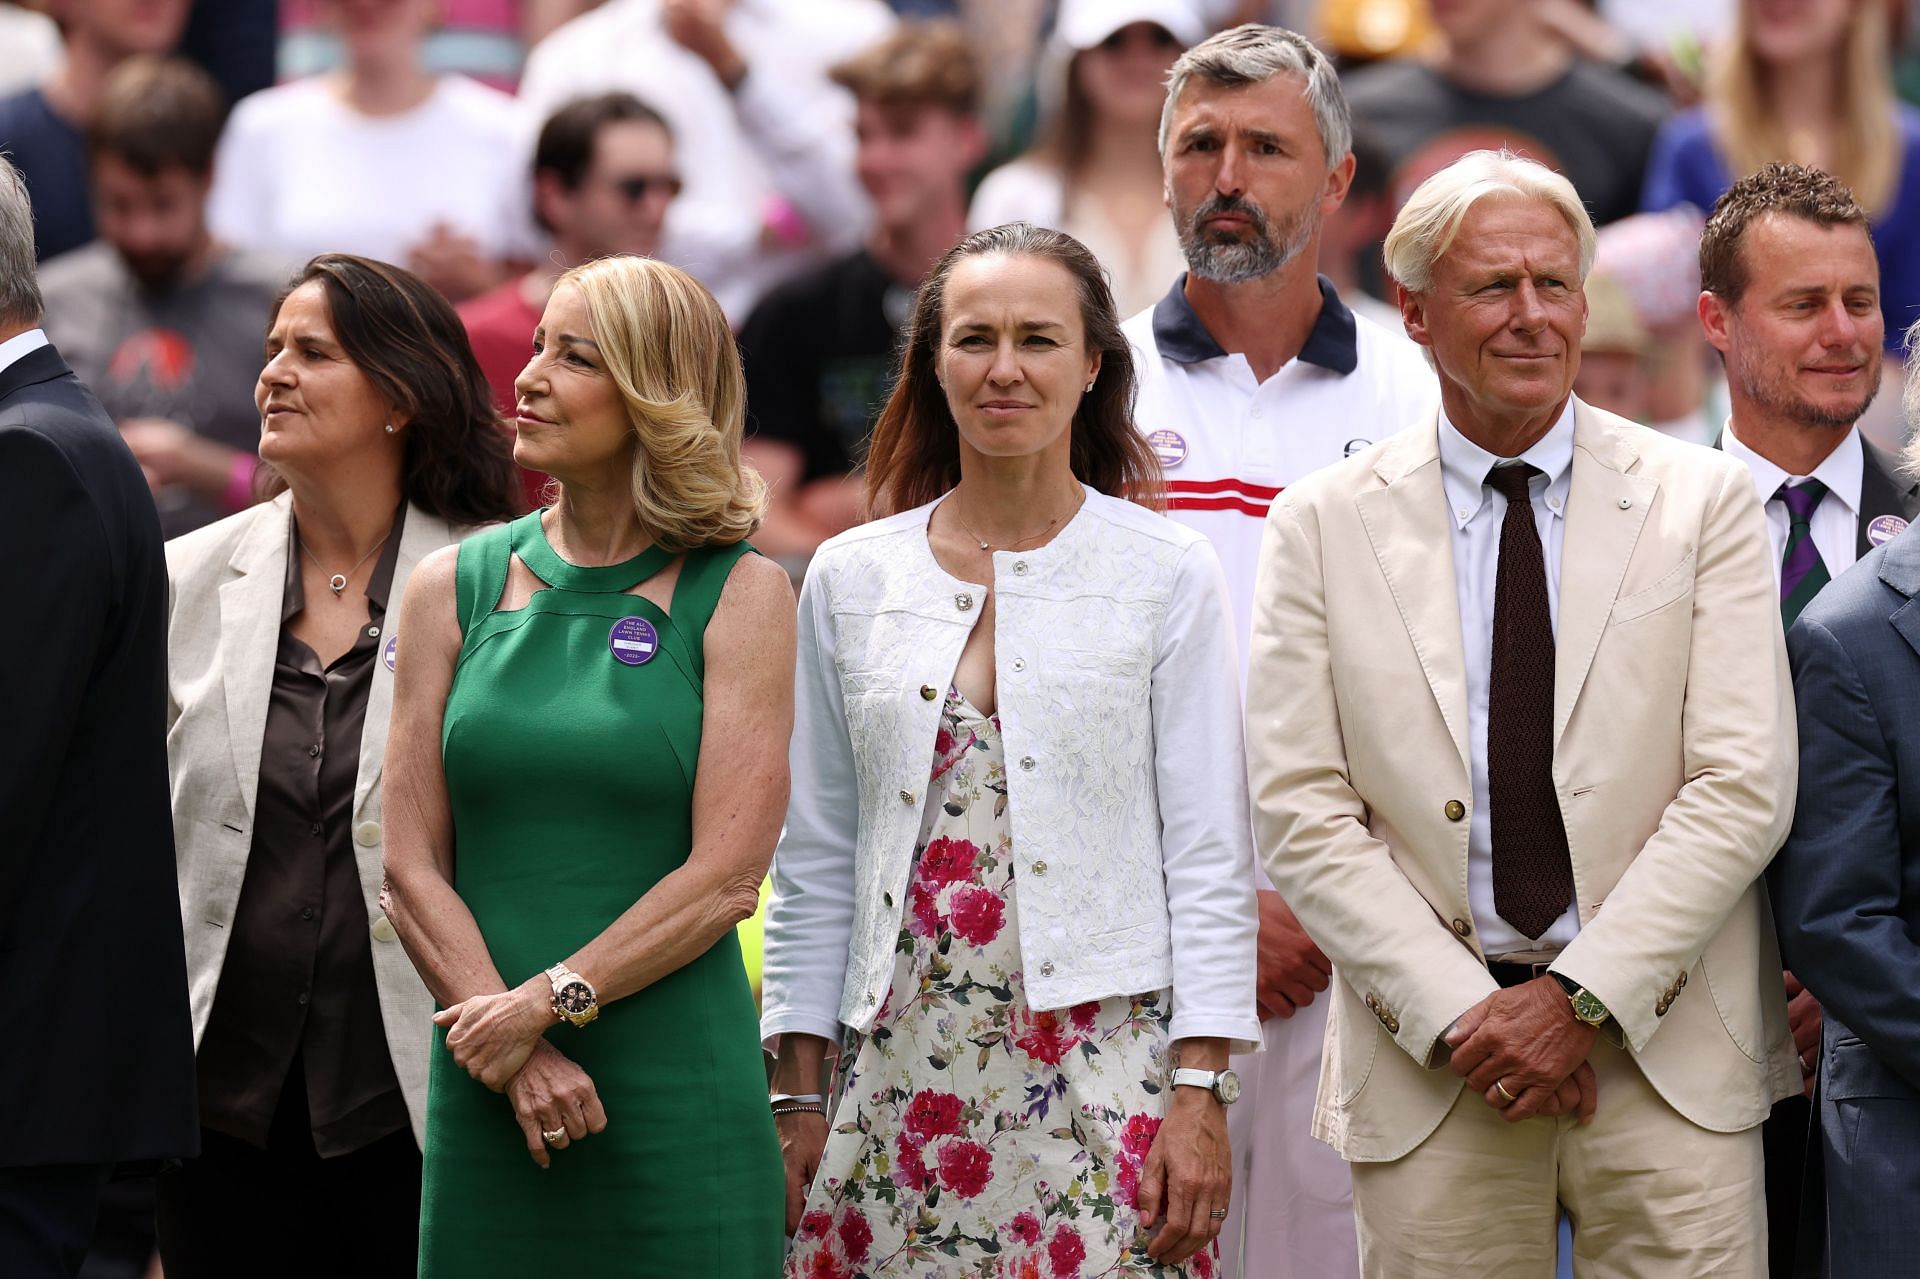 Martina Hingis pictured at Wimbledon 2022